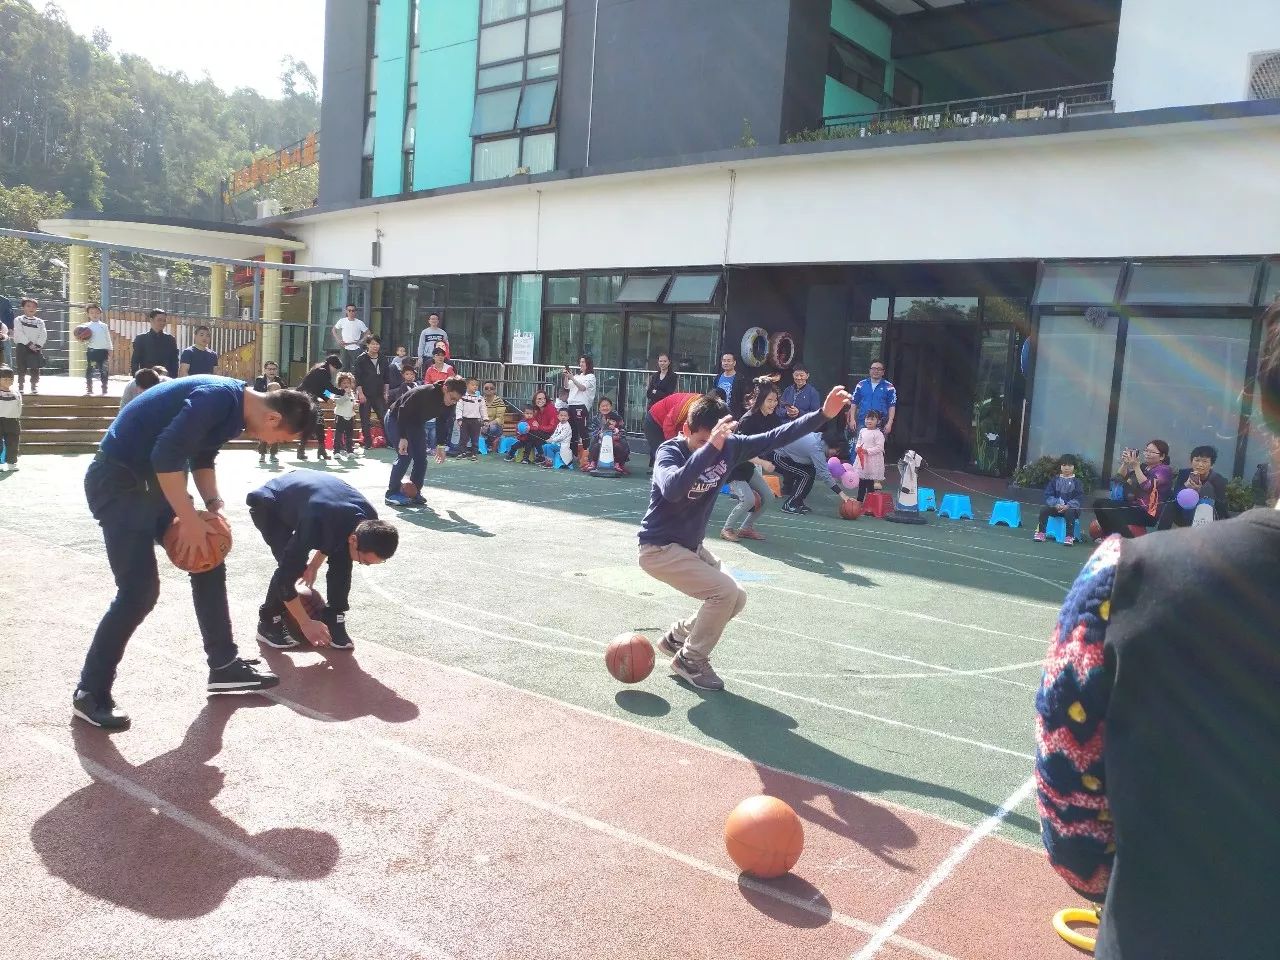 璞悦山幼儿园第三届冬季亲子运动会--你抛我接,亲子运球比赛赛事报道!